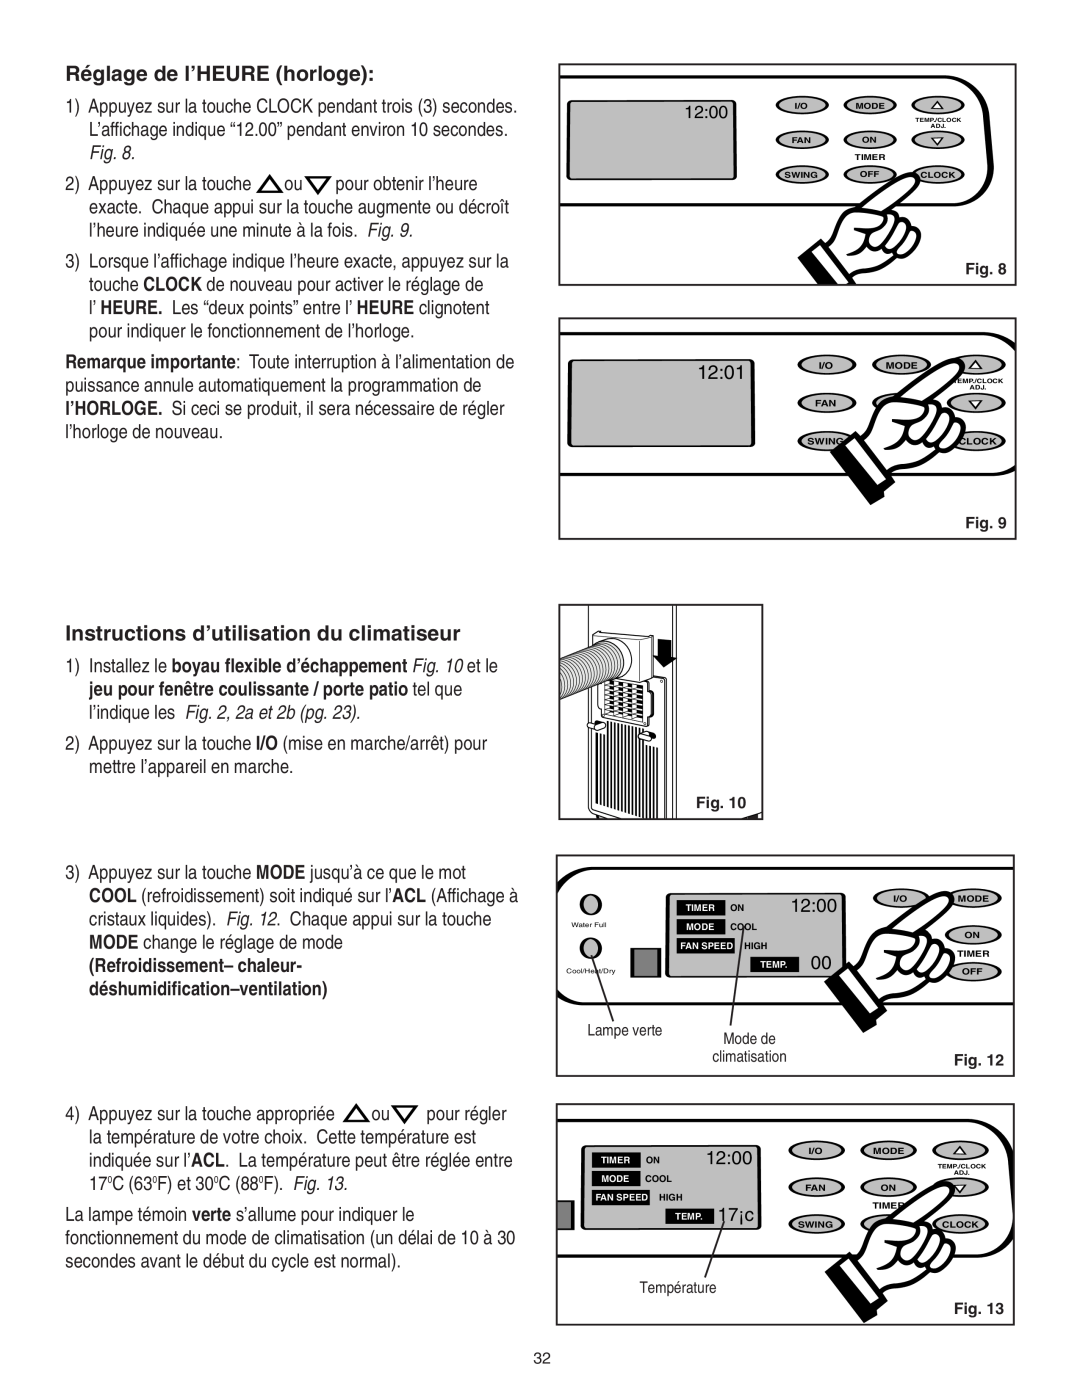 Danby SPAC8499 manual Réglage de l’HEURE horloge, Instructions d’utilisation du climatiseur, 12:01, 12:00, 17¡c 